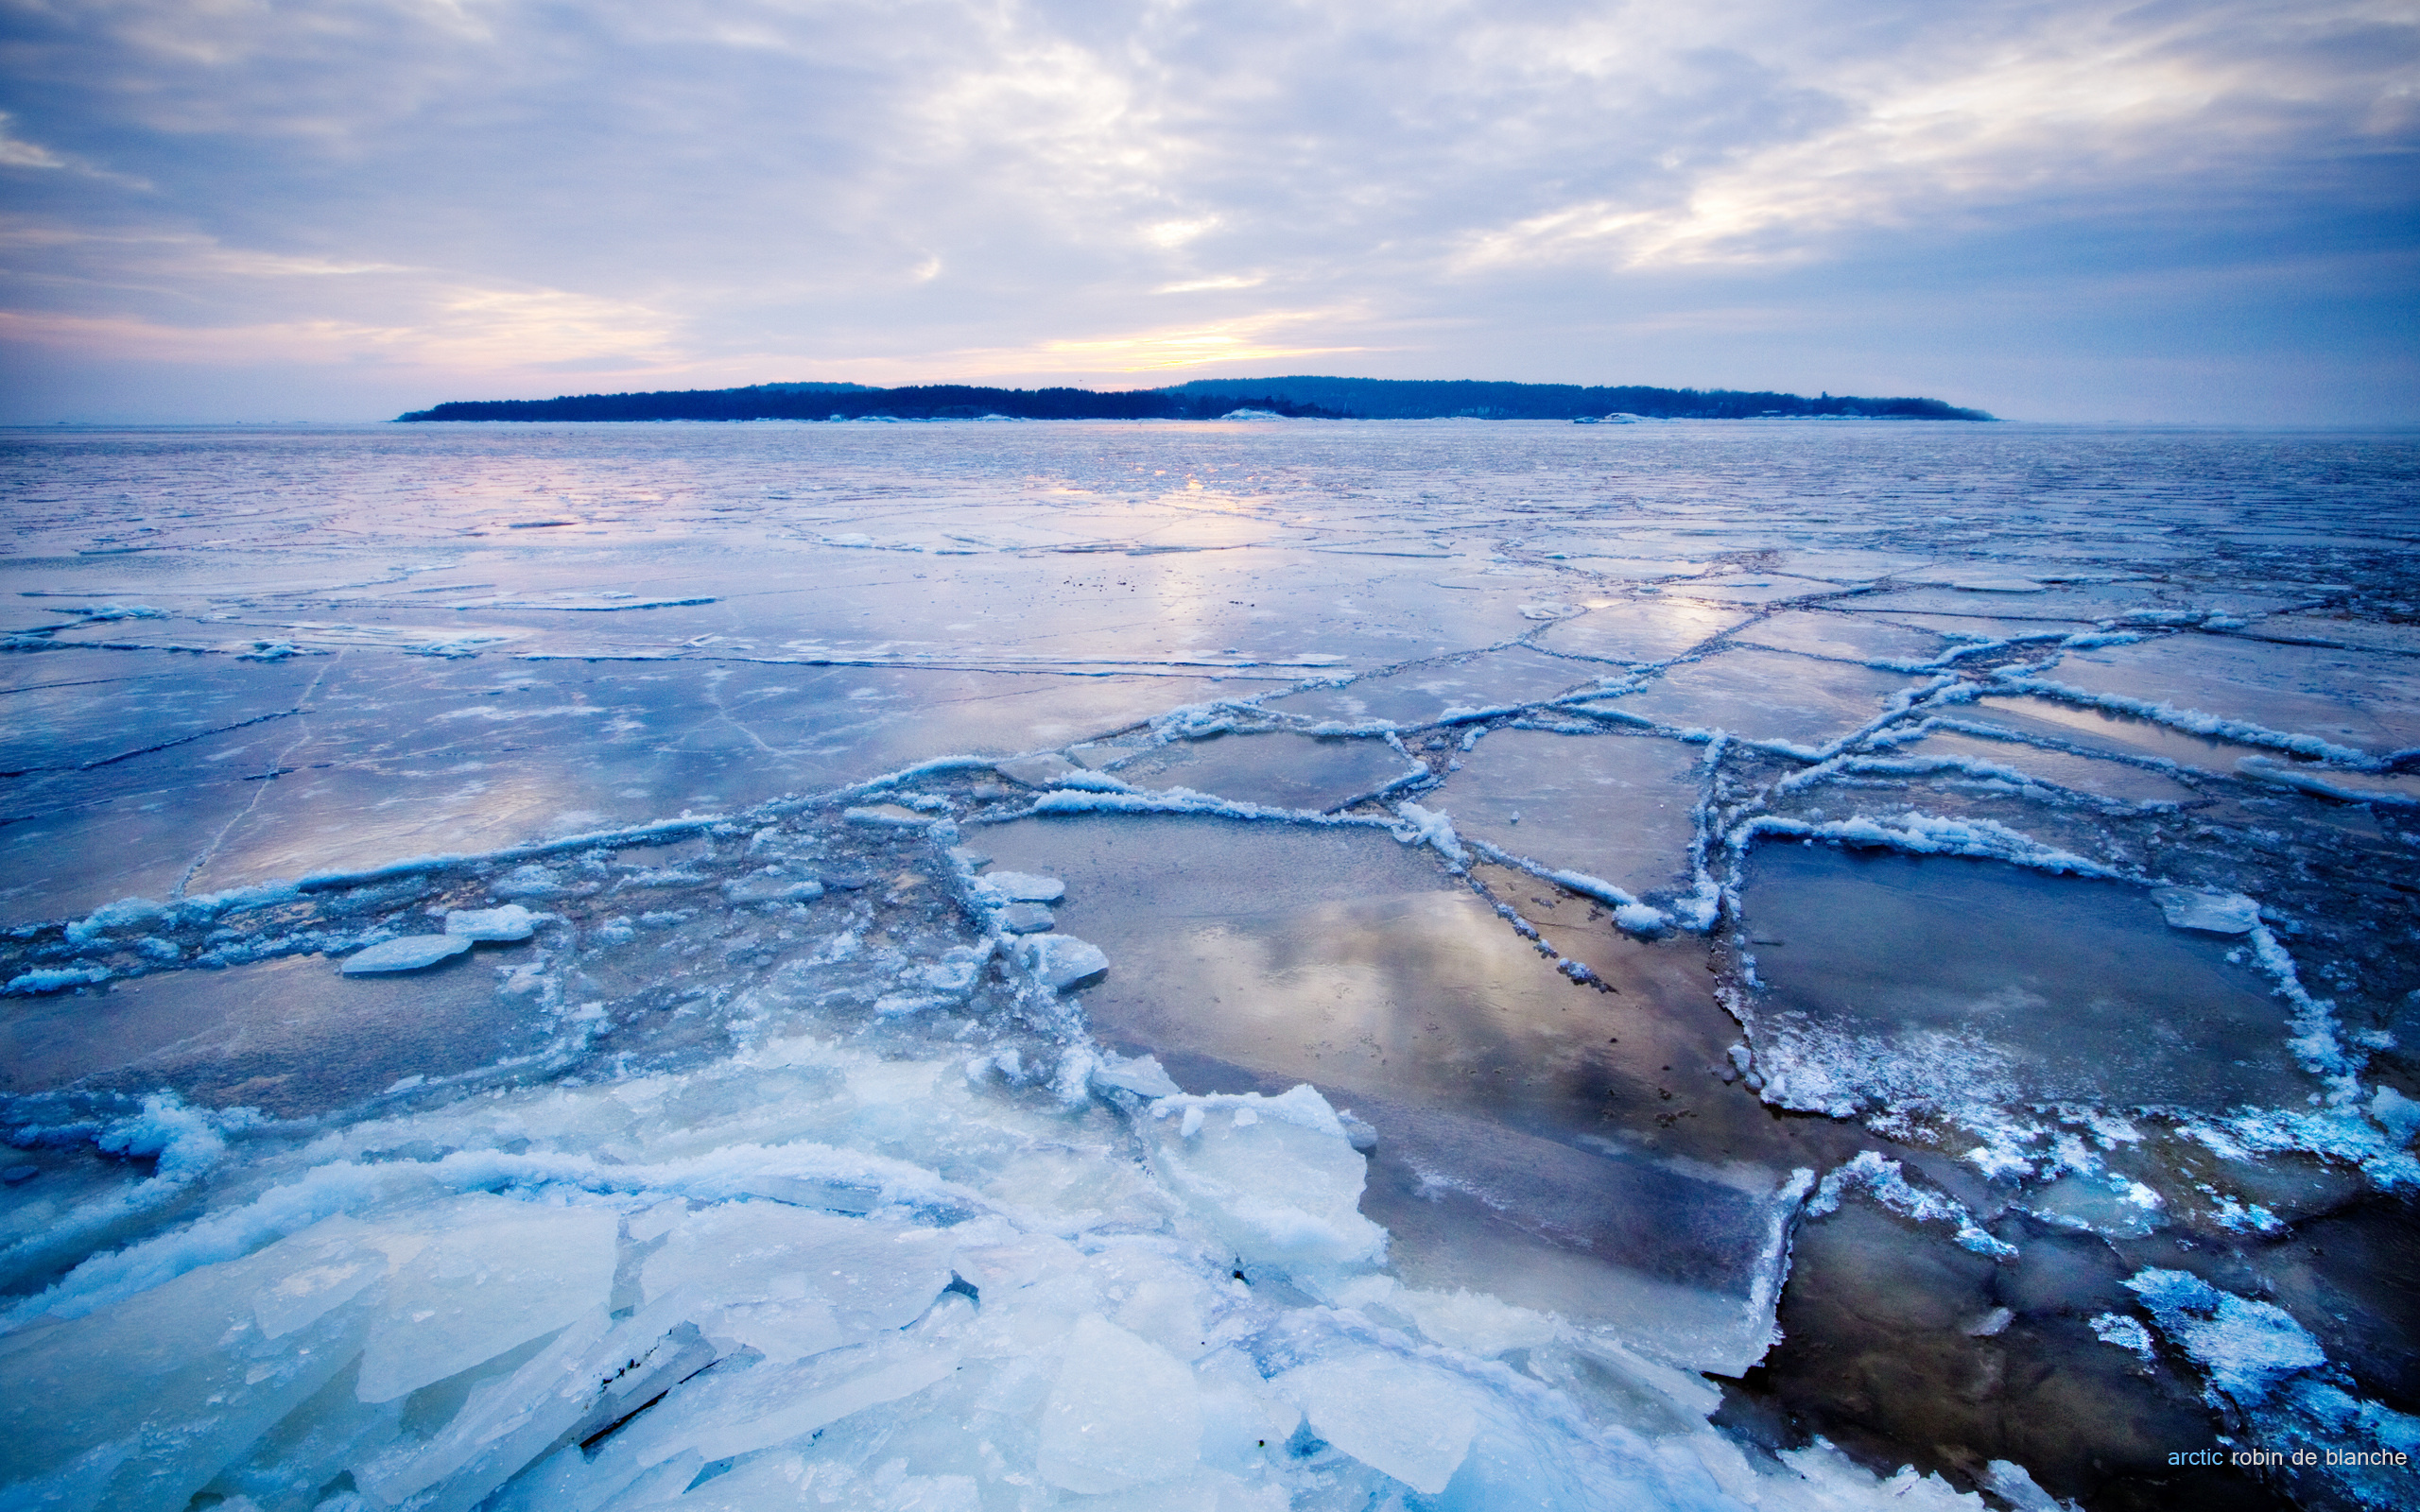 Тихо ночью покрывает лед. Северный Ледовитый океан Восточно-Сибирское море. Арктика Северный Ледовитый океан. Ледяной Покров Северного Ледовитого океана. Льды Арктики северооедовитого океана.